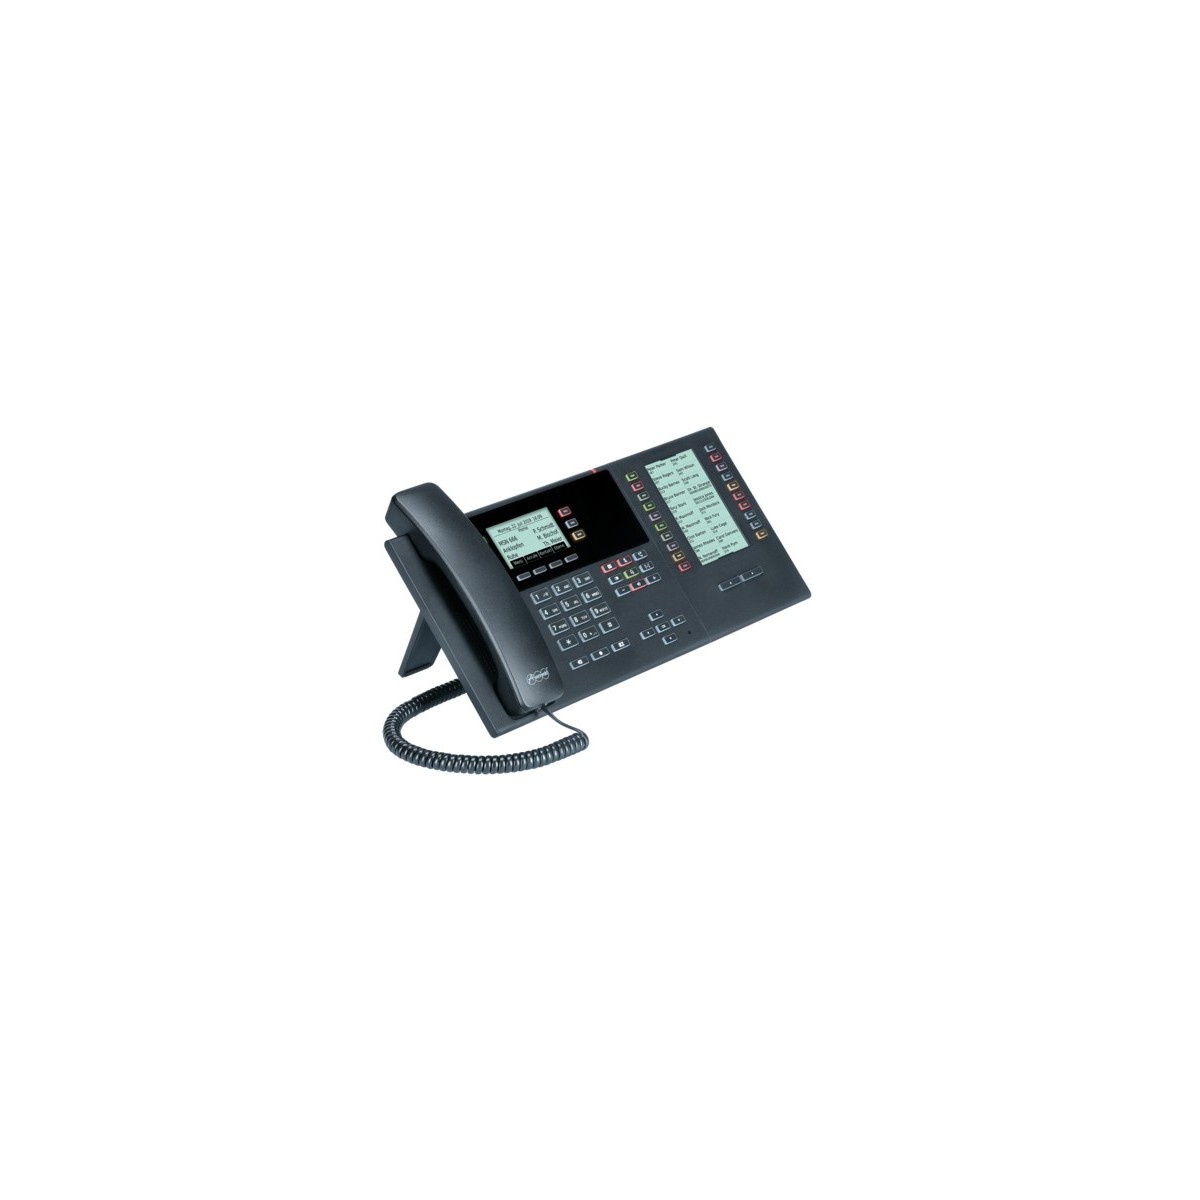 Auerswald COMfortel D-210 - IP-Telefon - Schwarz - Kabelloses Mobilteil - Kunststoff - 3 Zeilen - 2000 Eintragungen